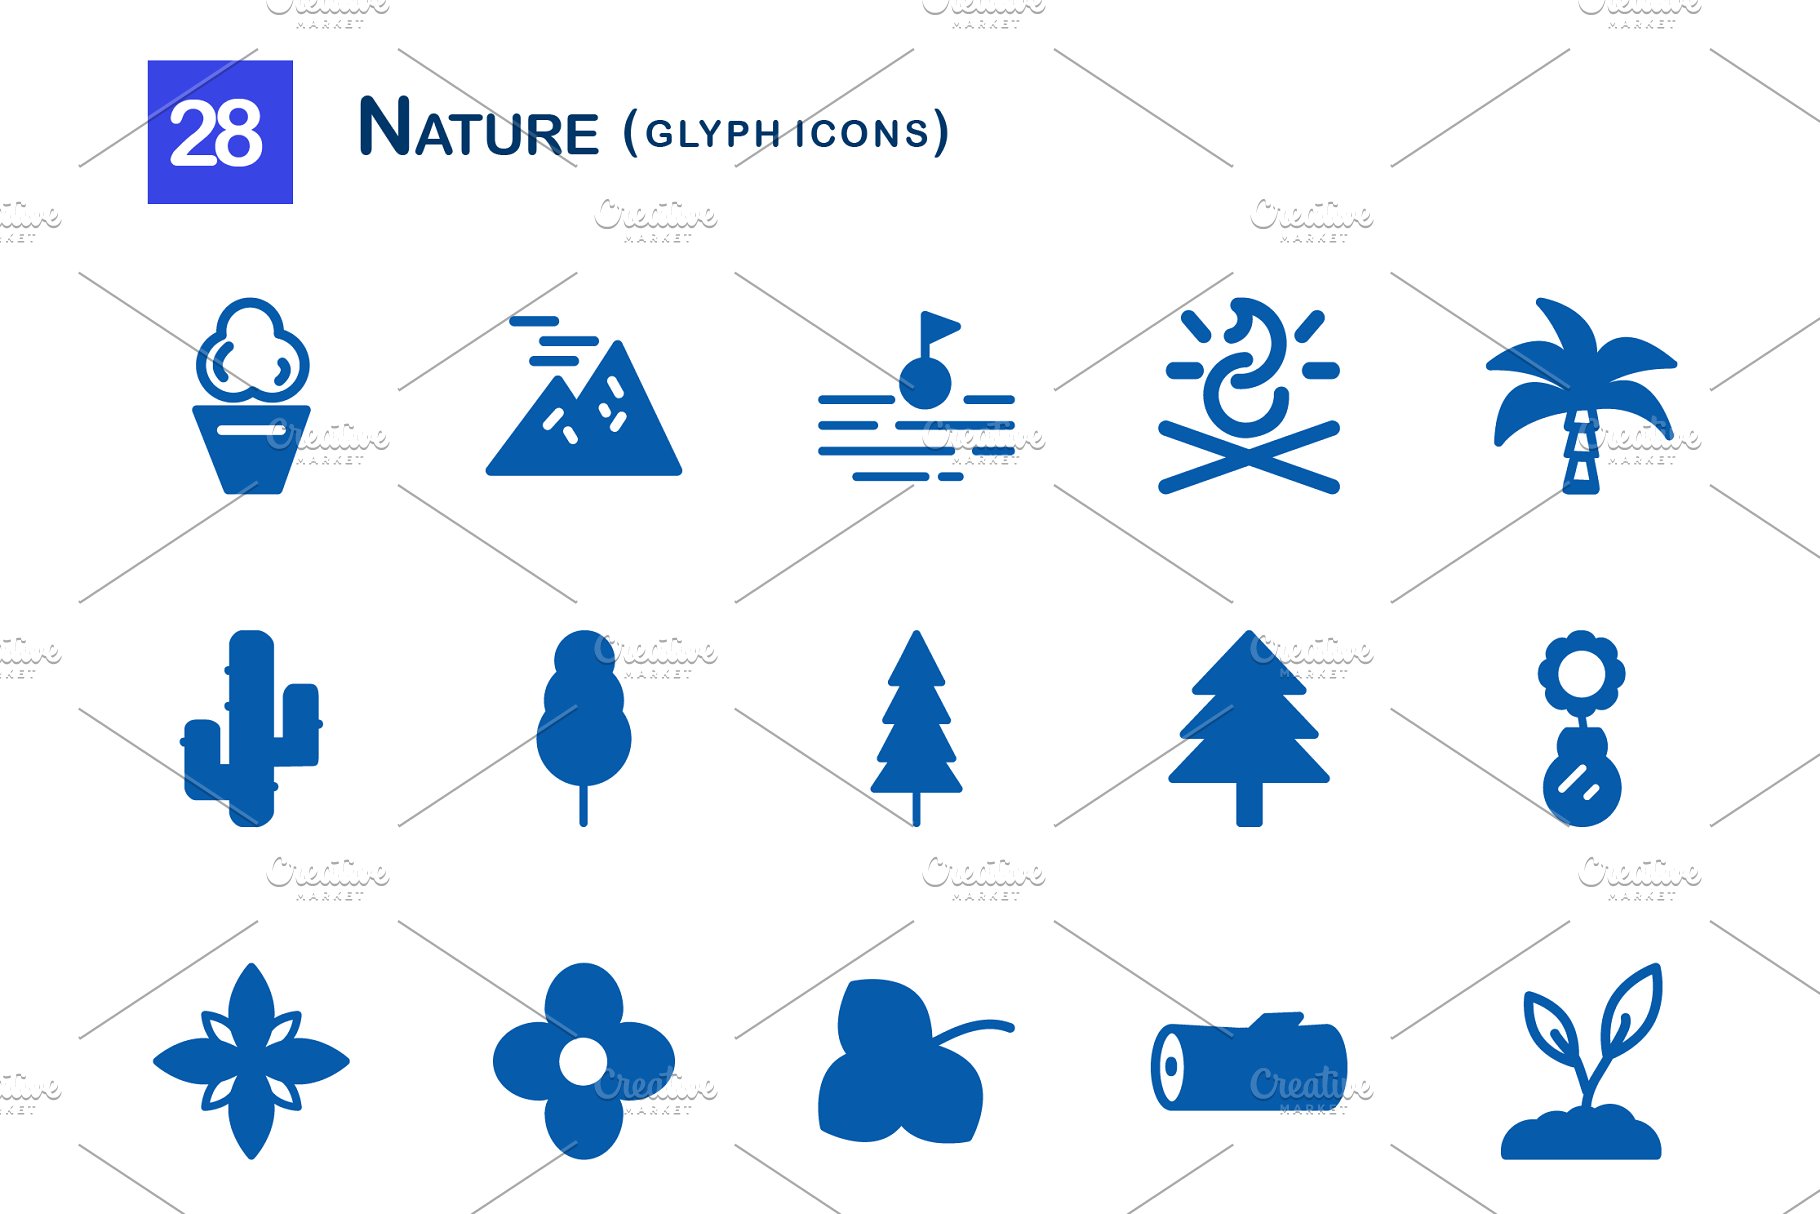 28个大自然元素字体素材库精选图标 28 Nature Glyph Icons插图(1)